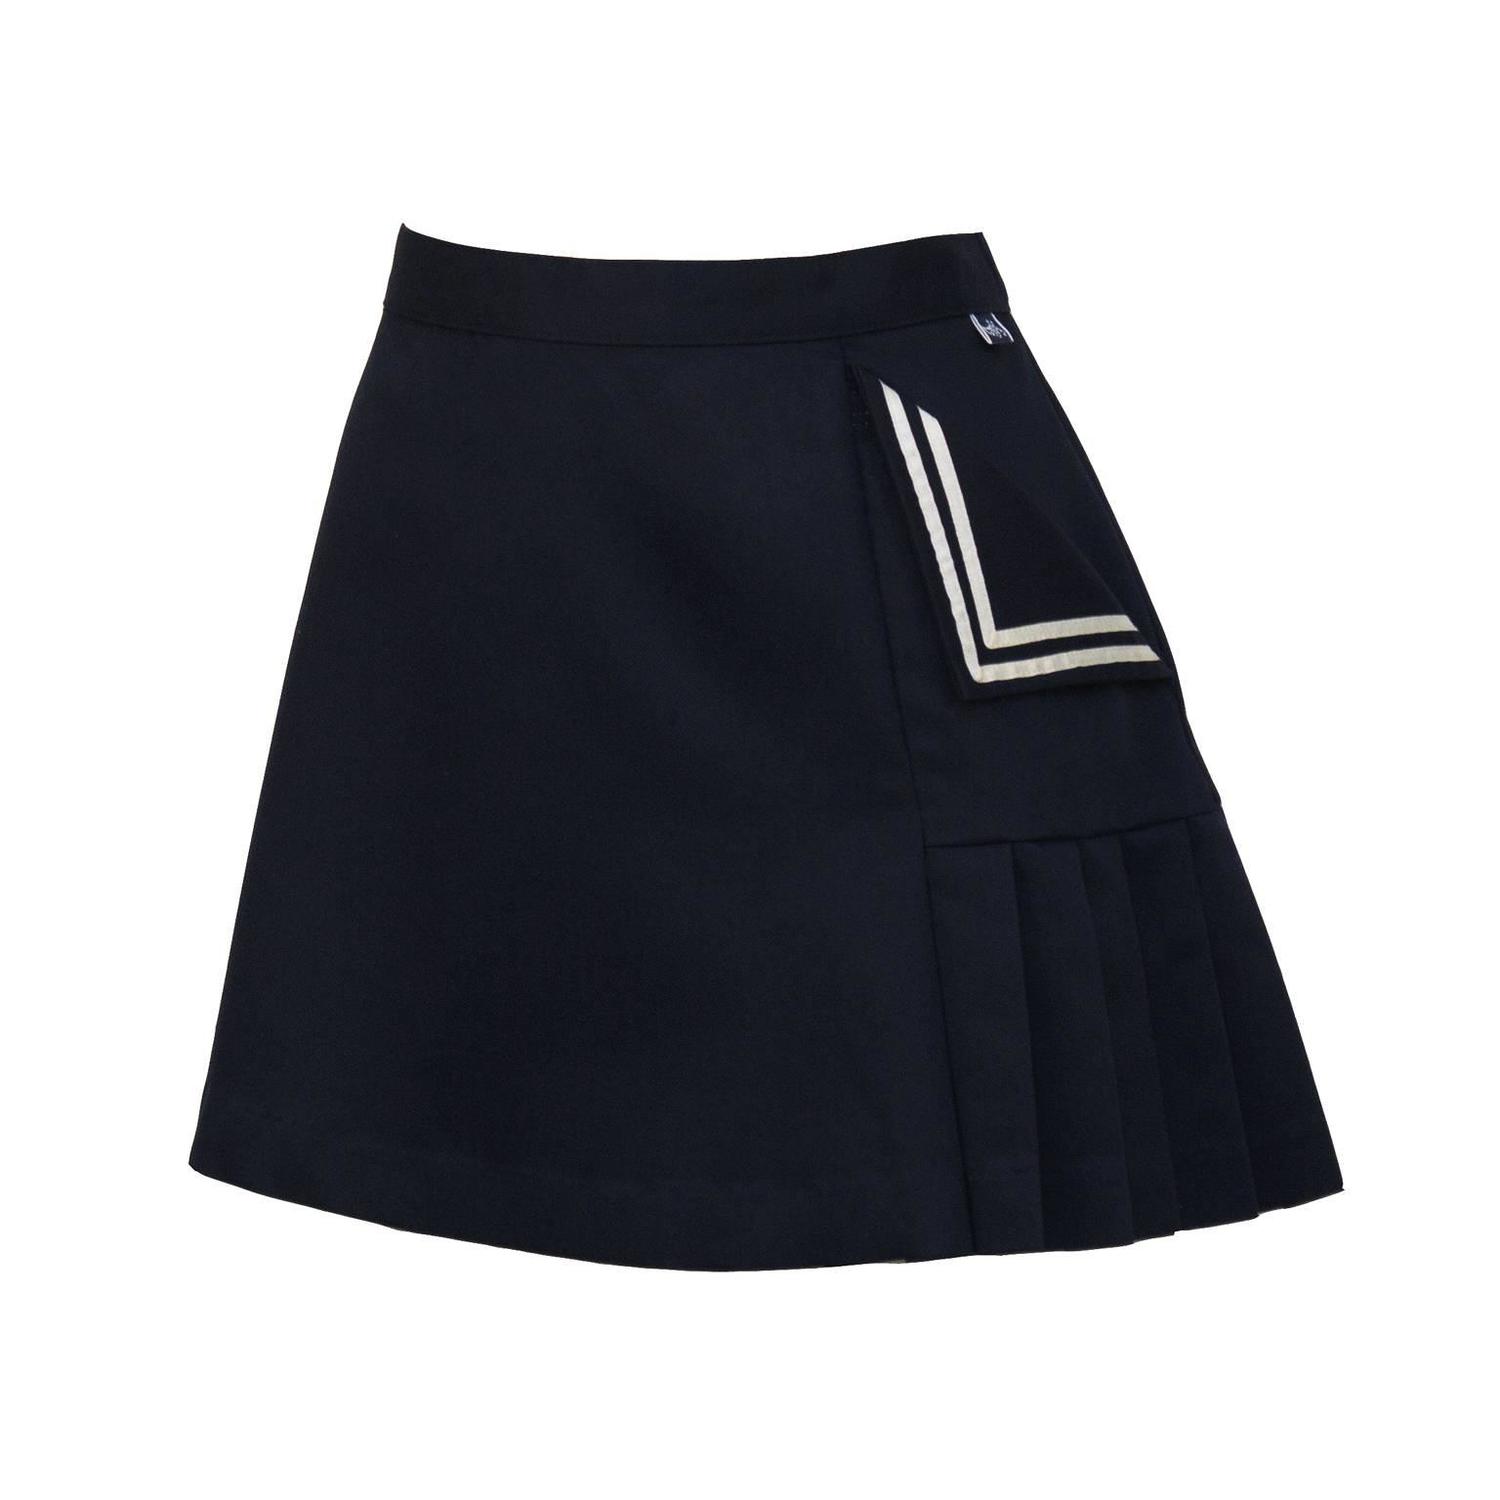 Cotton Tennis Skirt 69